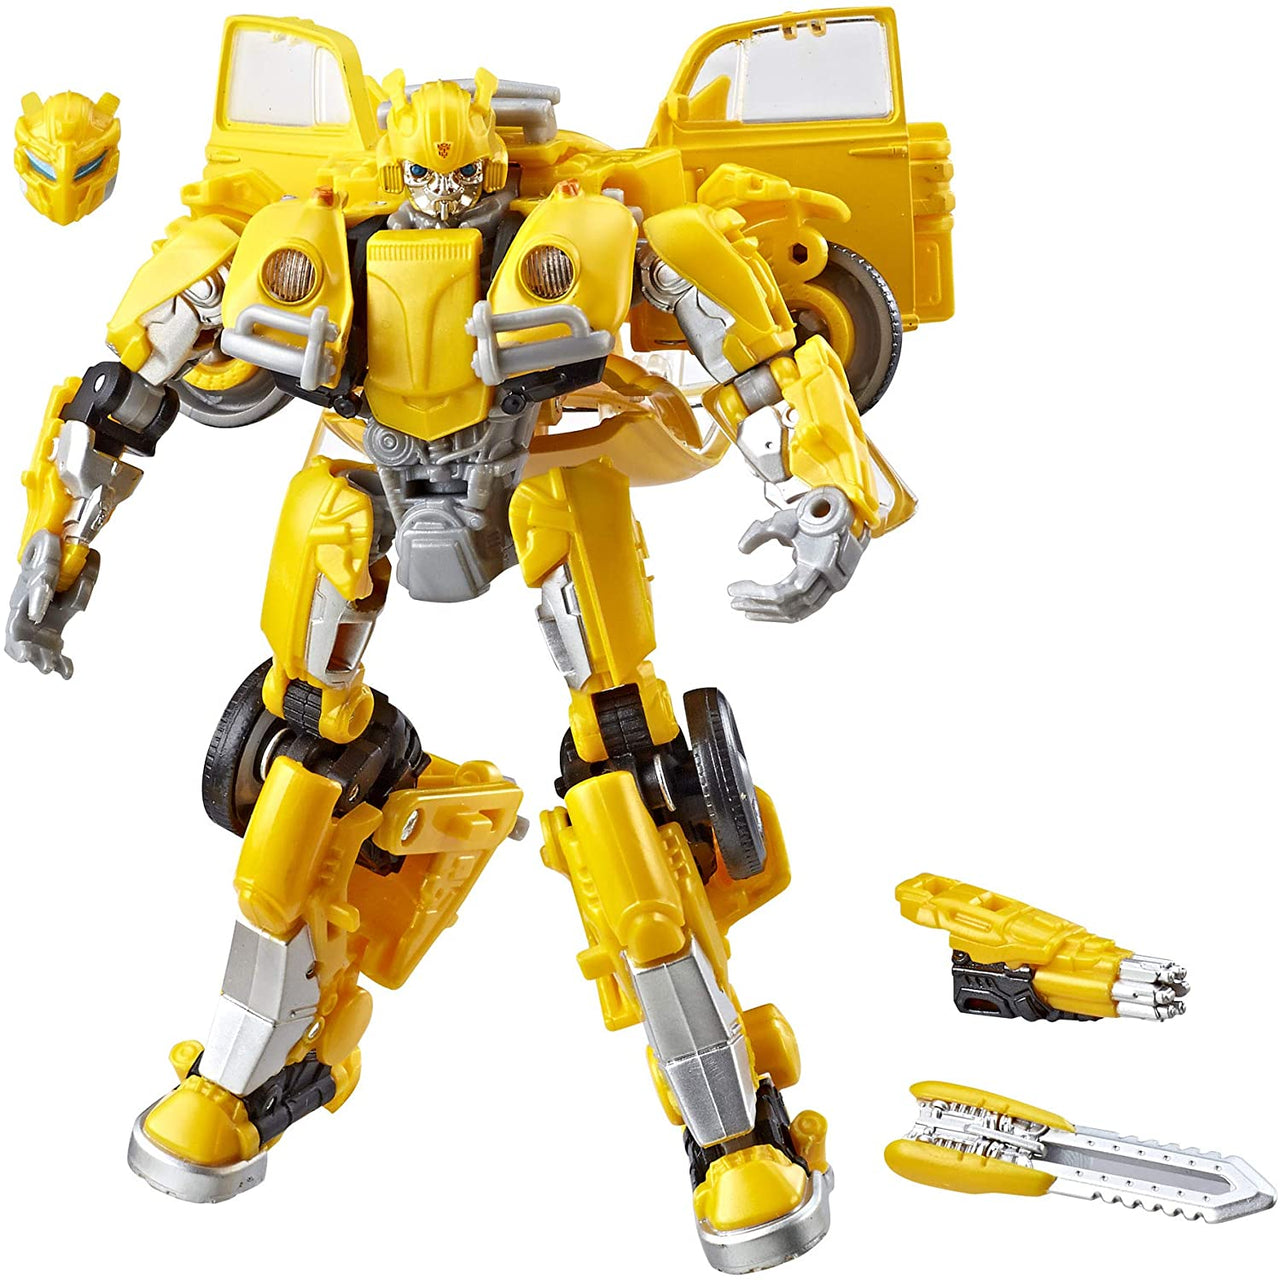 Hasbro Transformers: Studio Series 18 - Deluxe Bumblebee